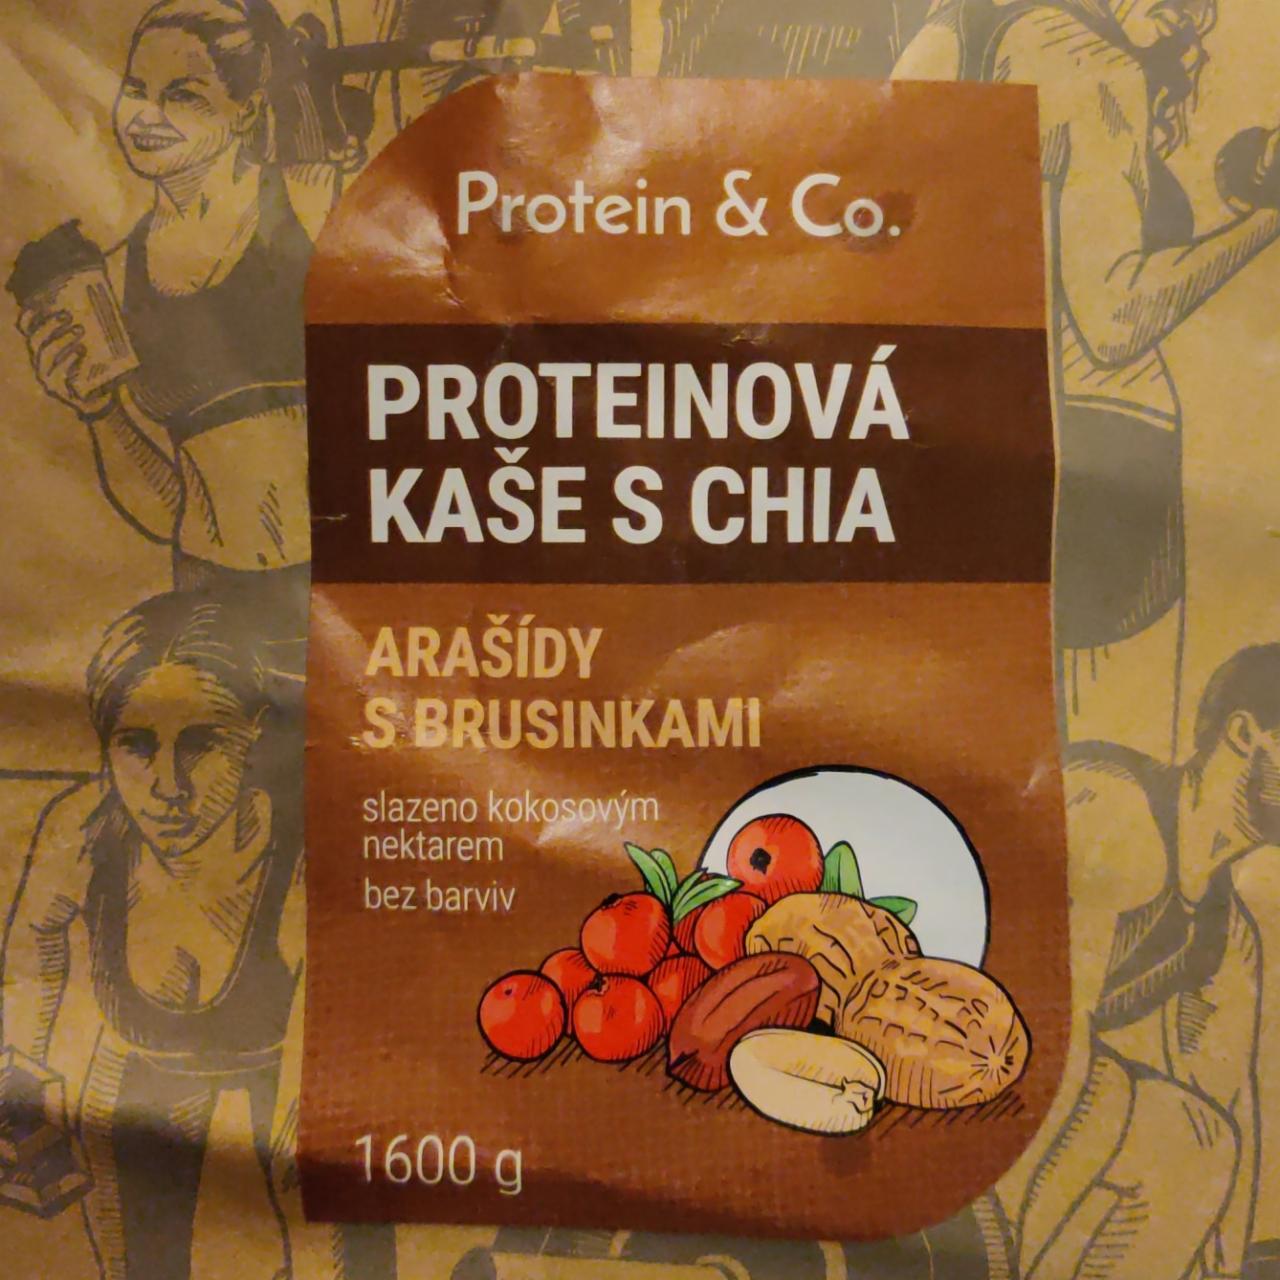 Fotografie - Proteinová kaše s chia Arašídy s brusinkami Protein & Co.